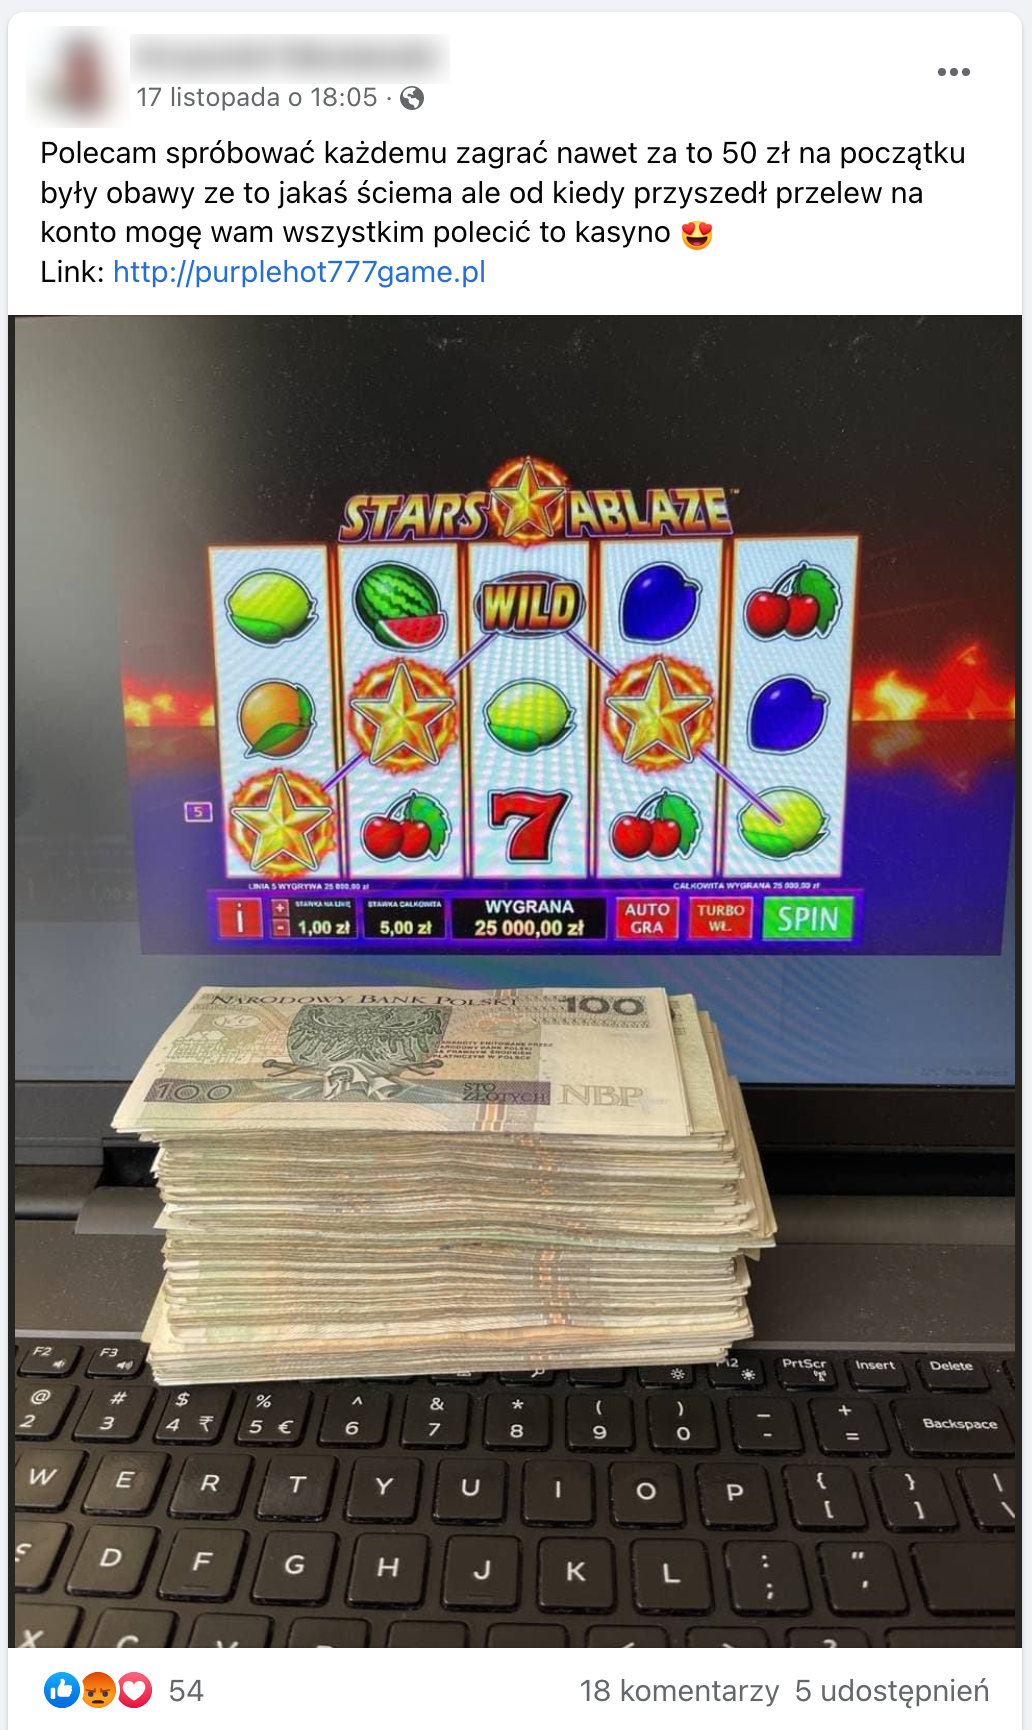 Zrzut ekranu posta na Facebooku. Na dołączonym zdjęciu jest gruby plik pieniędzy leżący na klawiaturze laptopa. Na ekranie wyświetla się strona internetowego kasyna.